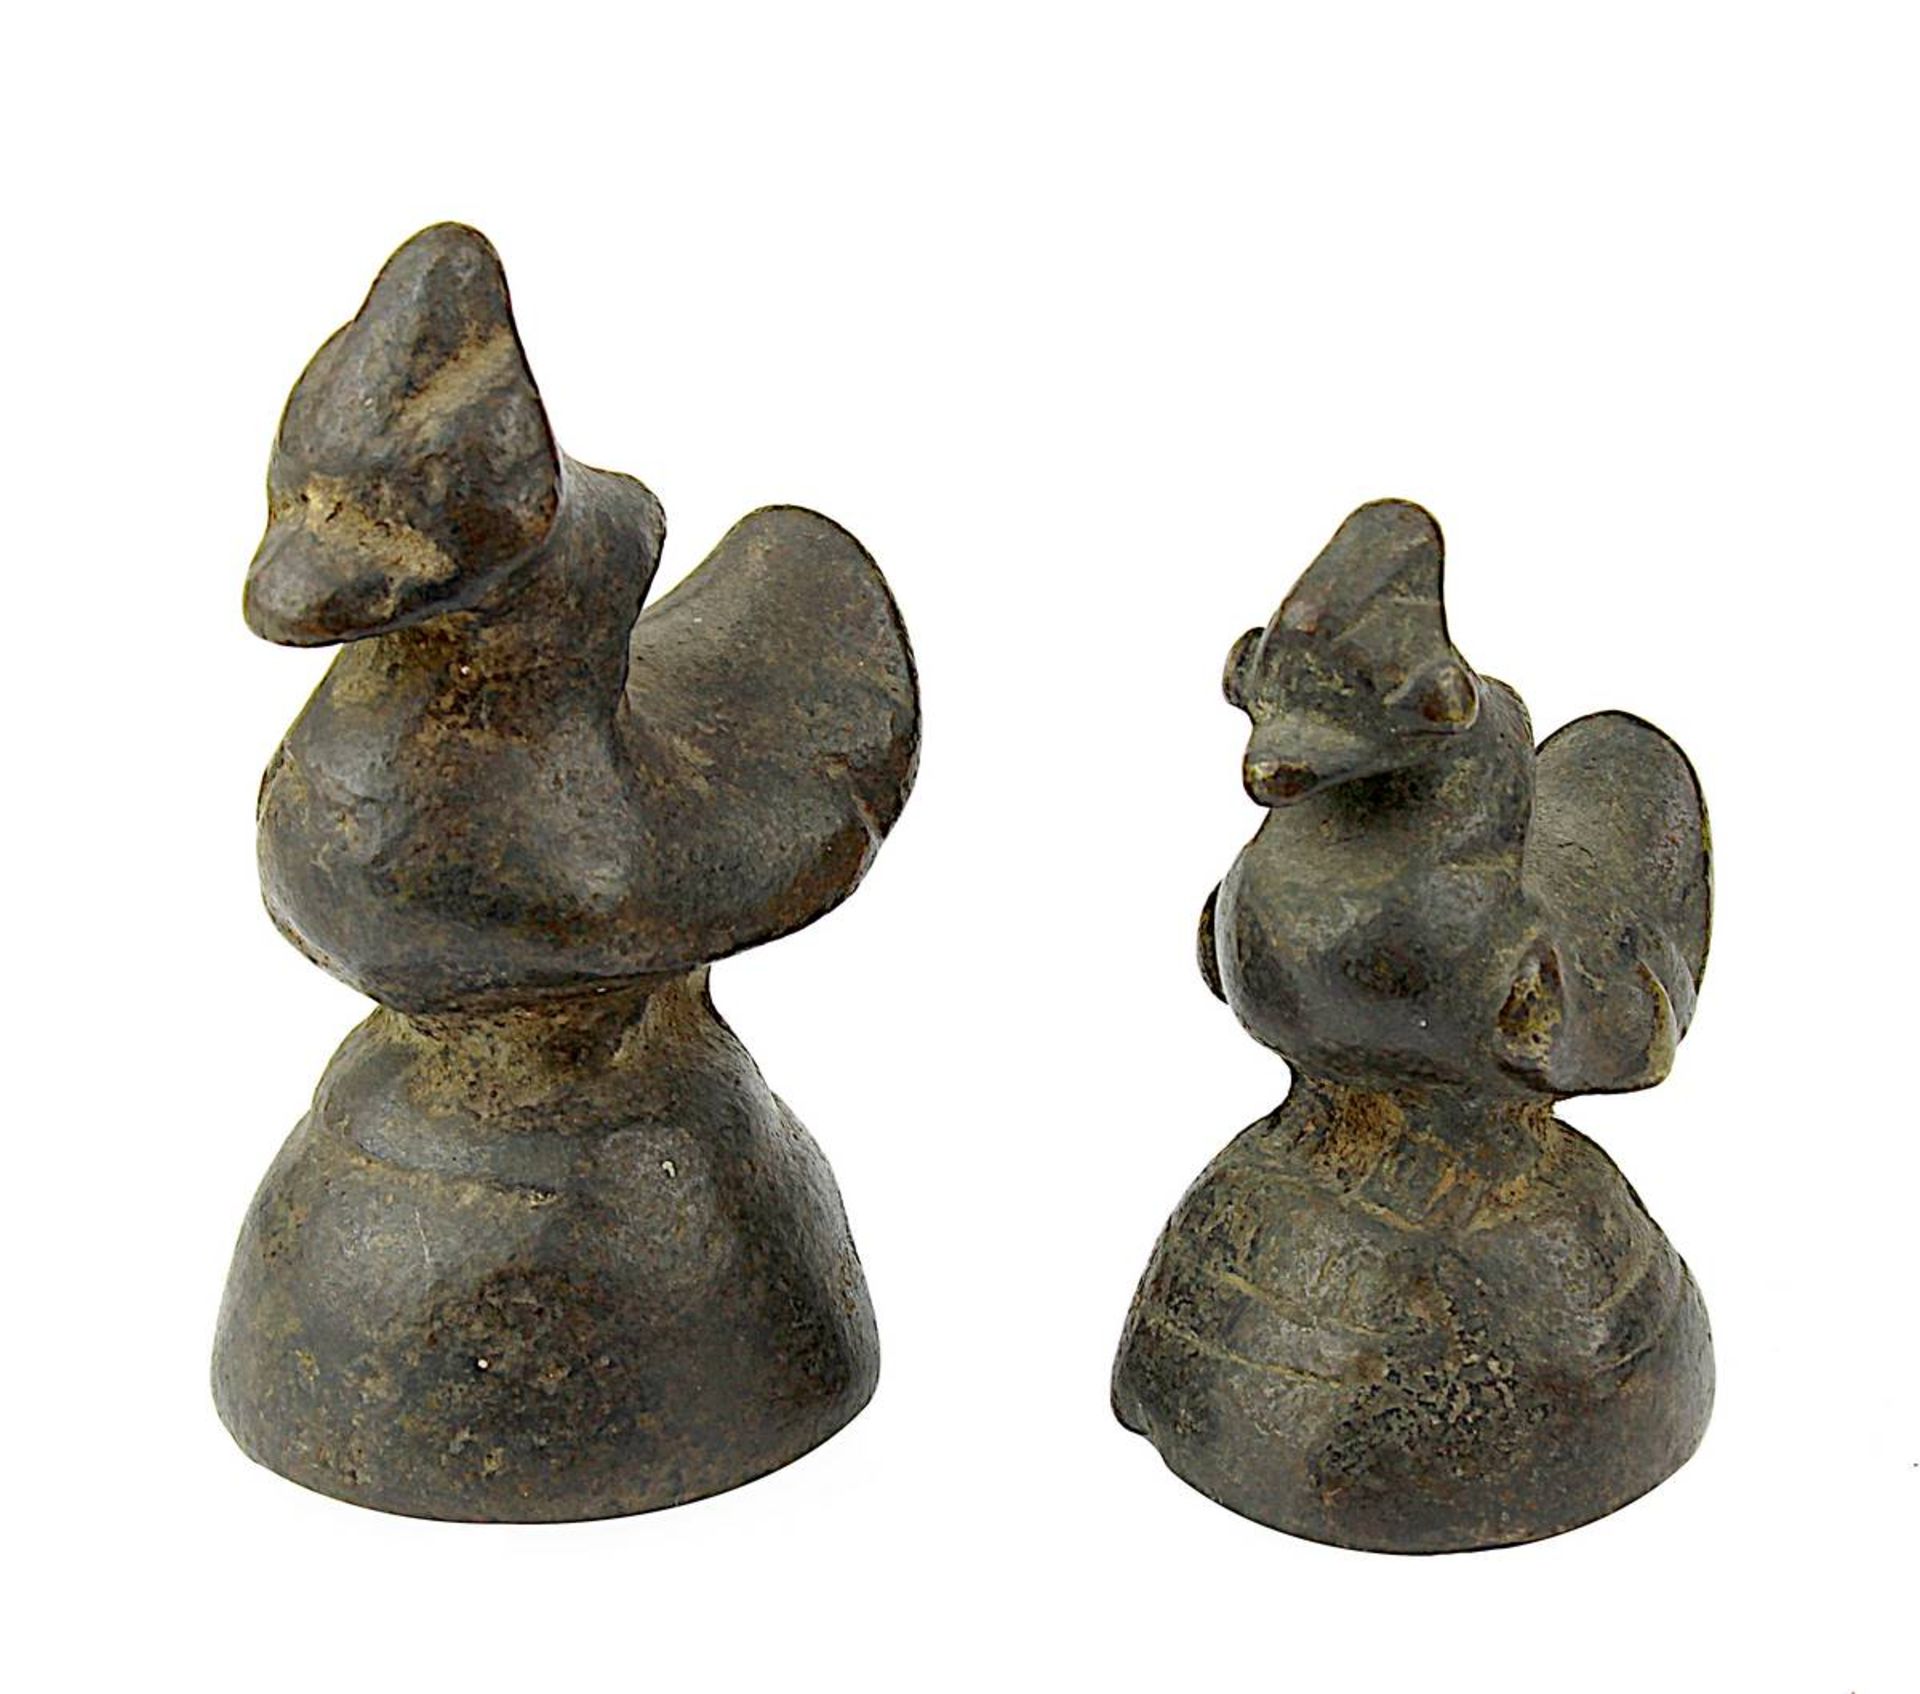 2 Opiumgewichte in Vogelform, Südostasien 19. Jh., Bronzeguss mit schöner Alterspatina, H 5,5 und